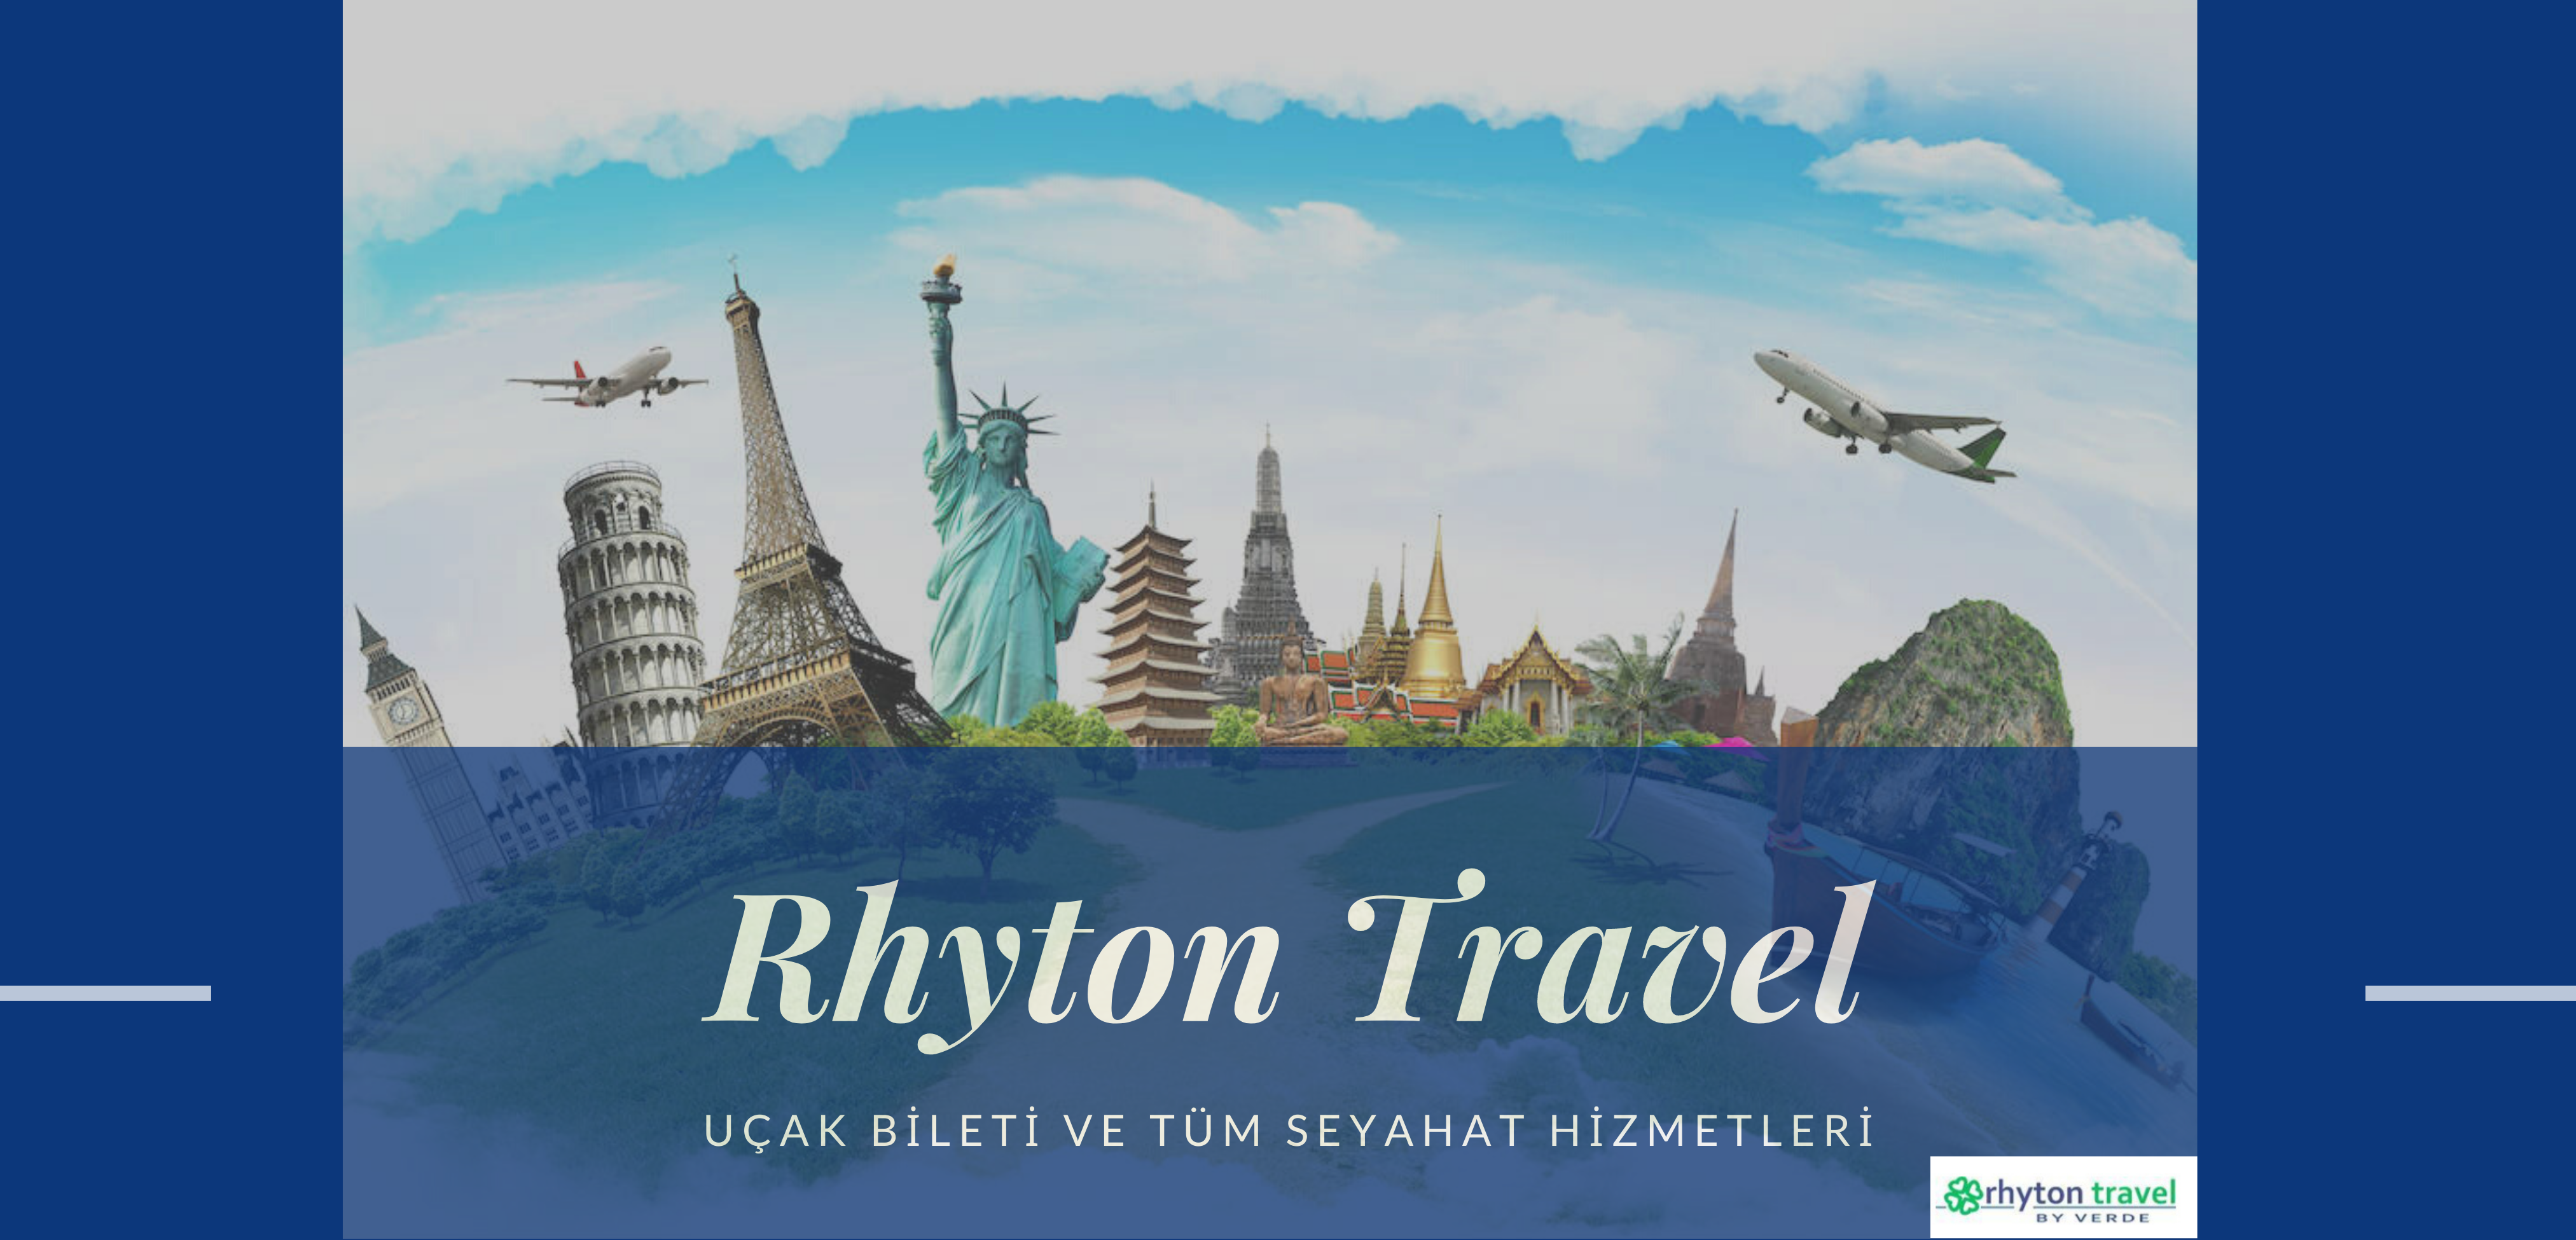 Rhyton Travel